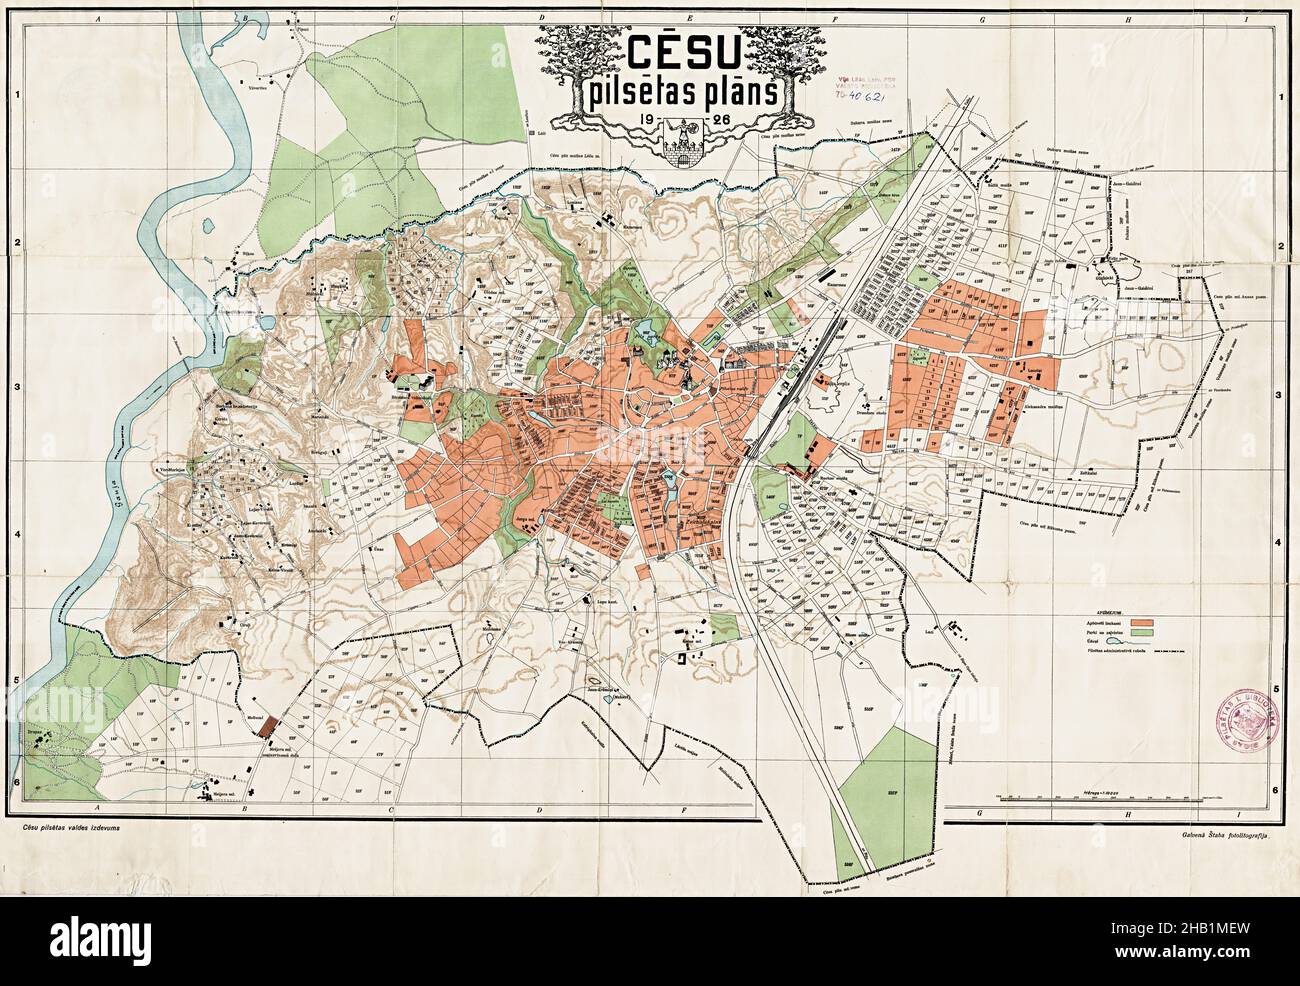 Cēsis Mao, Cēsis City, Cēsis Plan, Old Cēsis Map, Retro Cēsis Map, Retro Cēsis Plan, CesisCity Map, Cesis City, Cesis Plan, Cesis City Plan Stock Photo